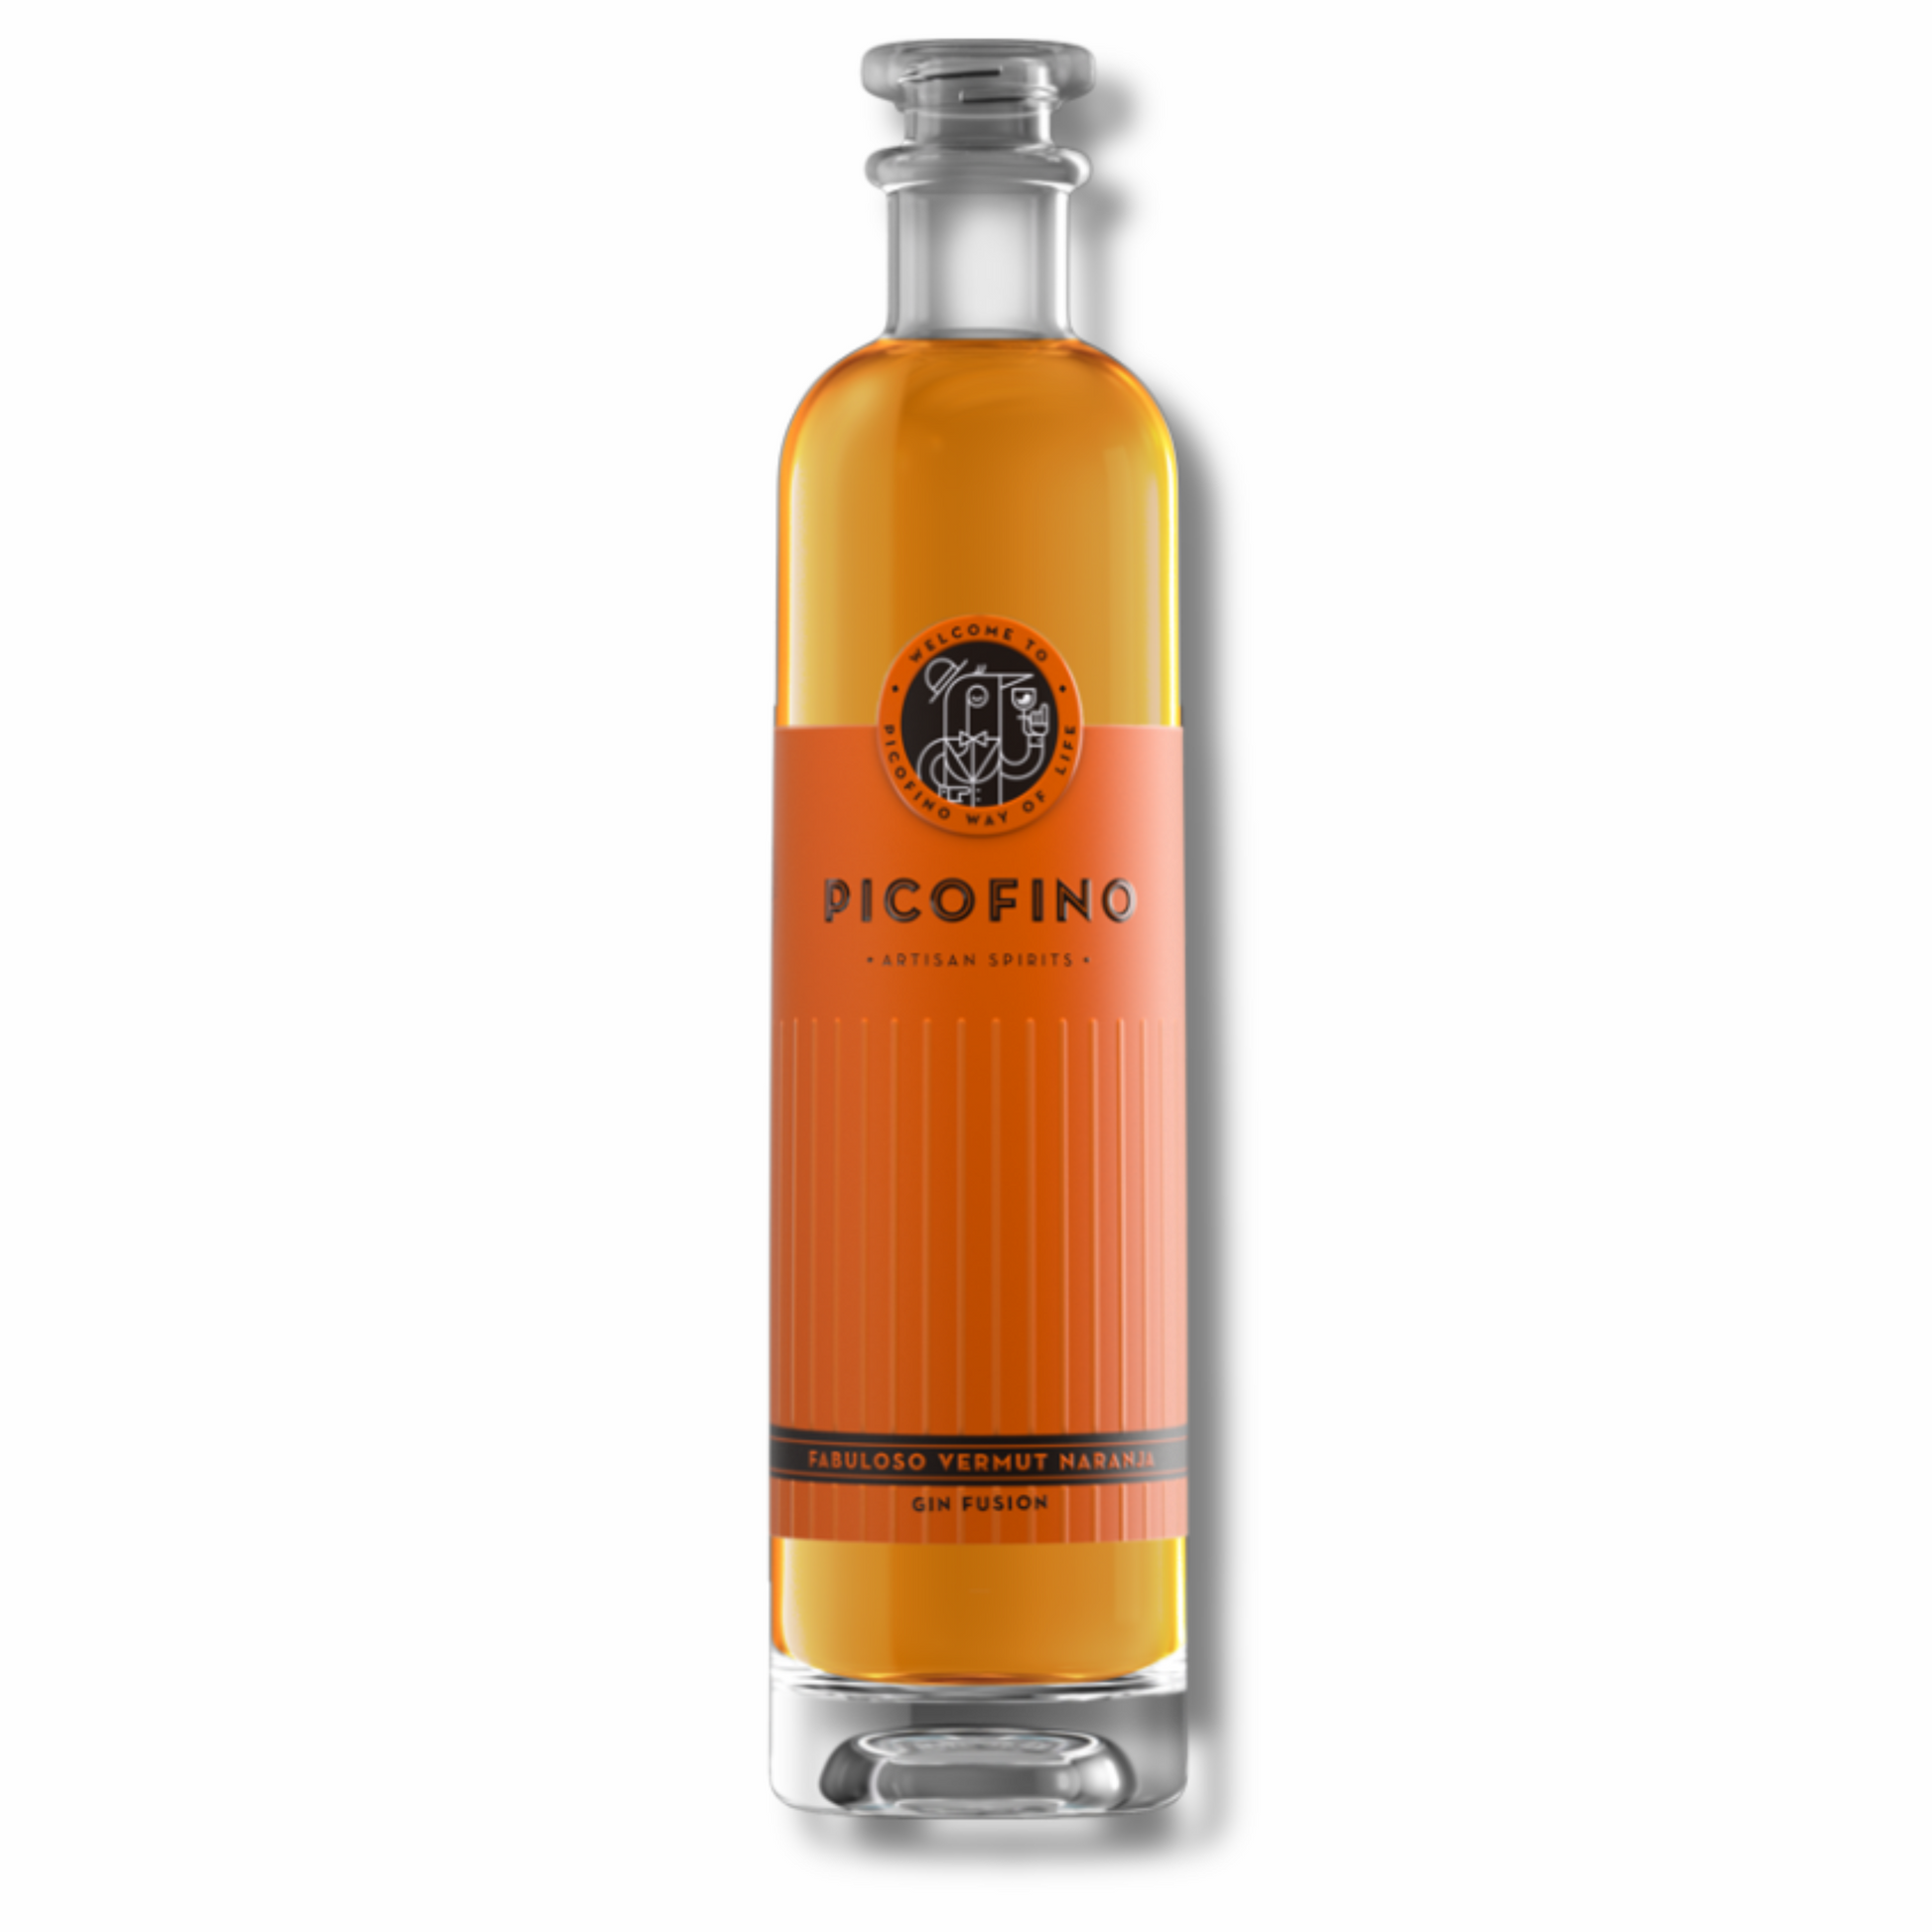 Vermouth de naranja PICOFINO gin fusion - D'12 Gourmet